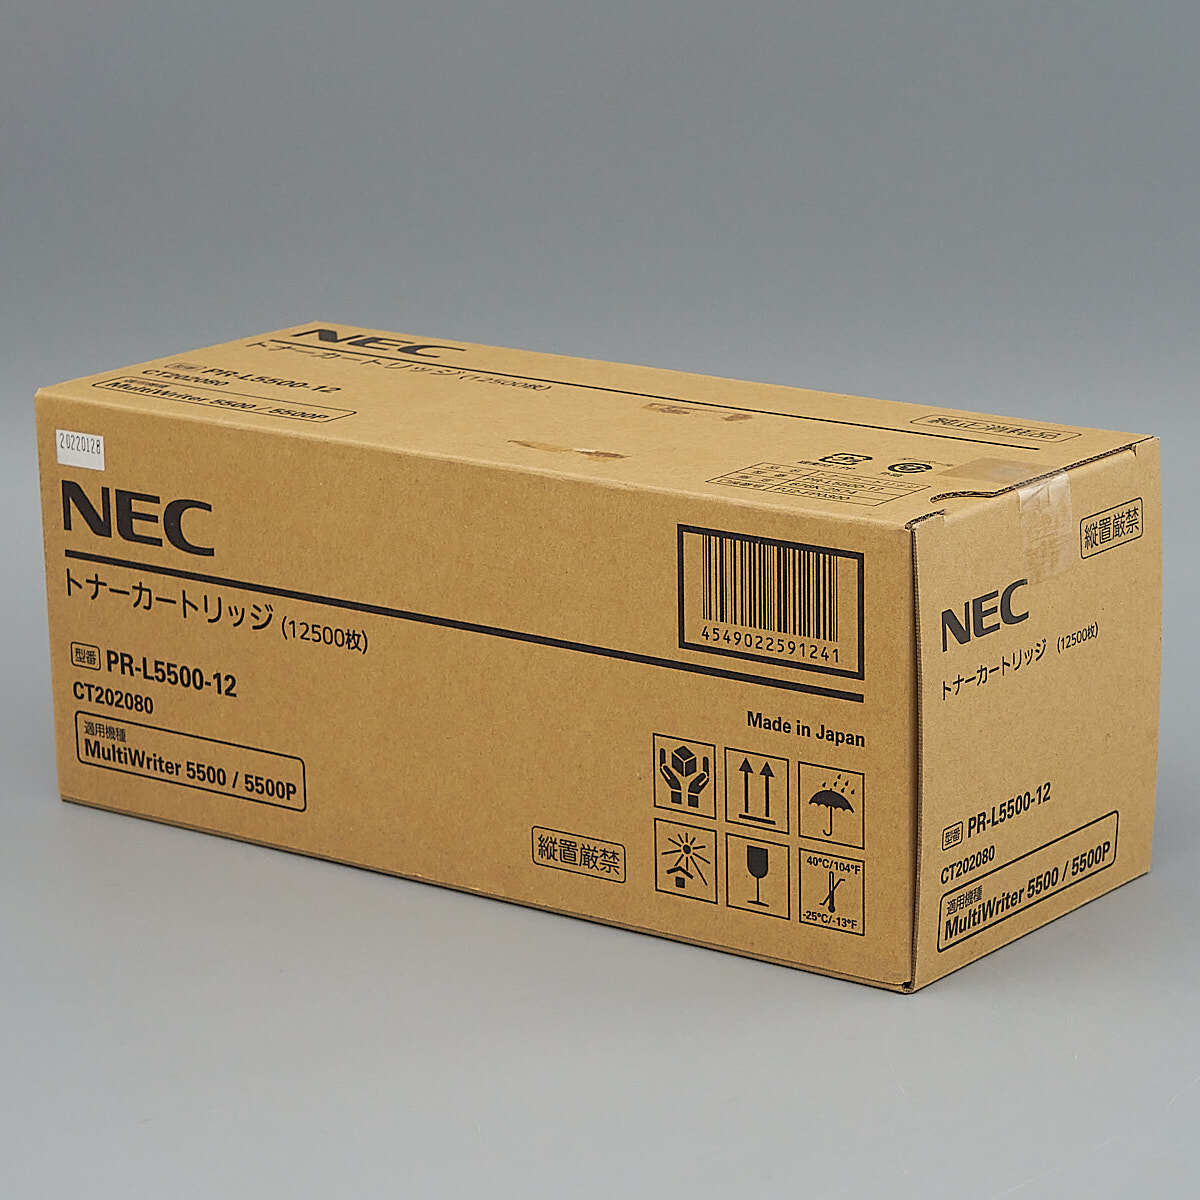 送料無料!! NEC PR-L5500-12 トナーカートリッジ 純正　MultiWriter 5500/5500P 用 印字枚数 12500 枚_画像1